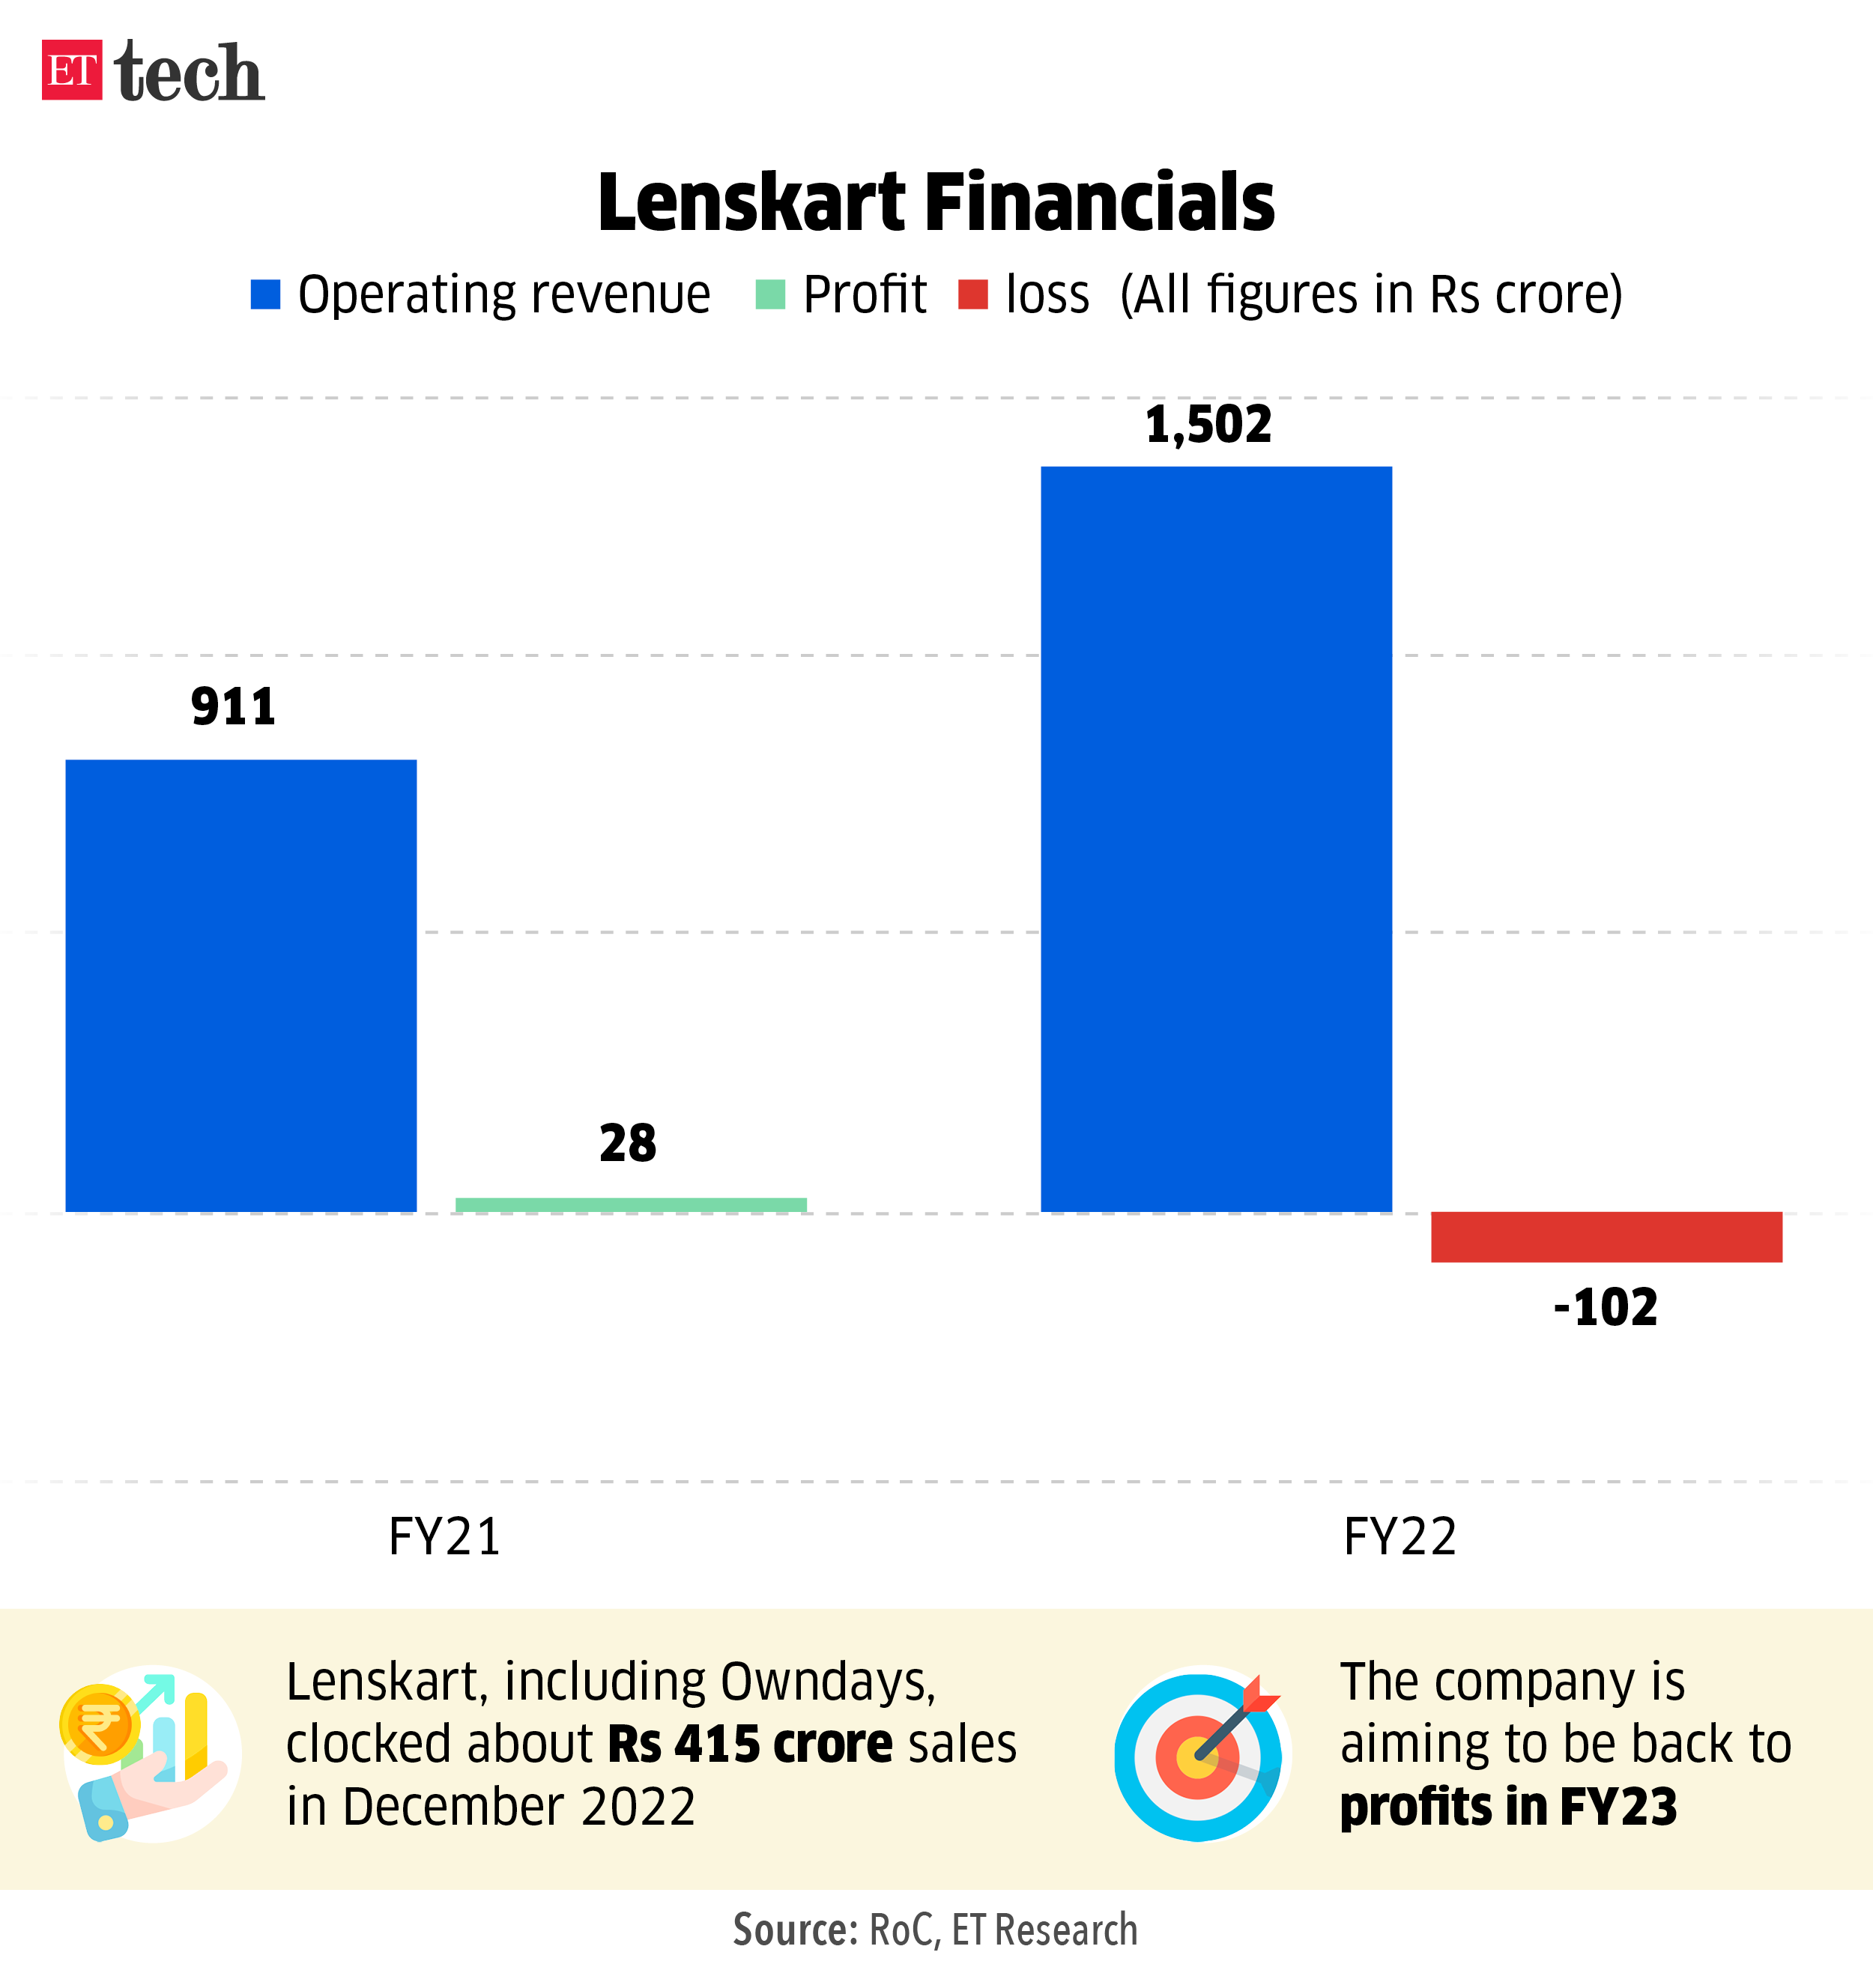 Lenskart Financials